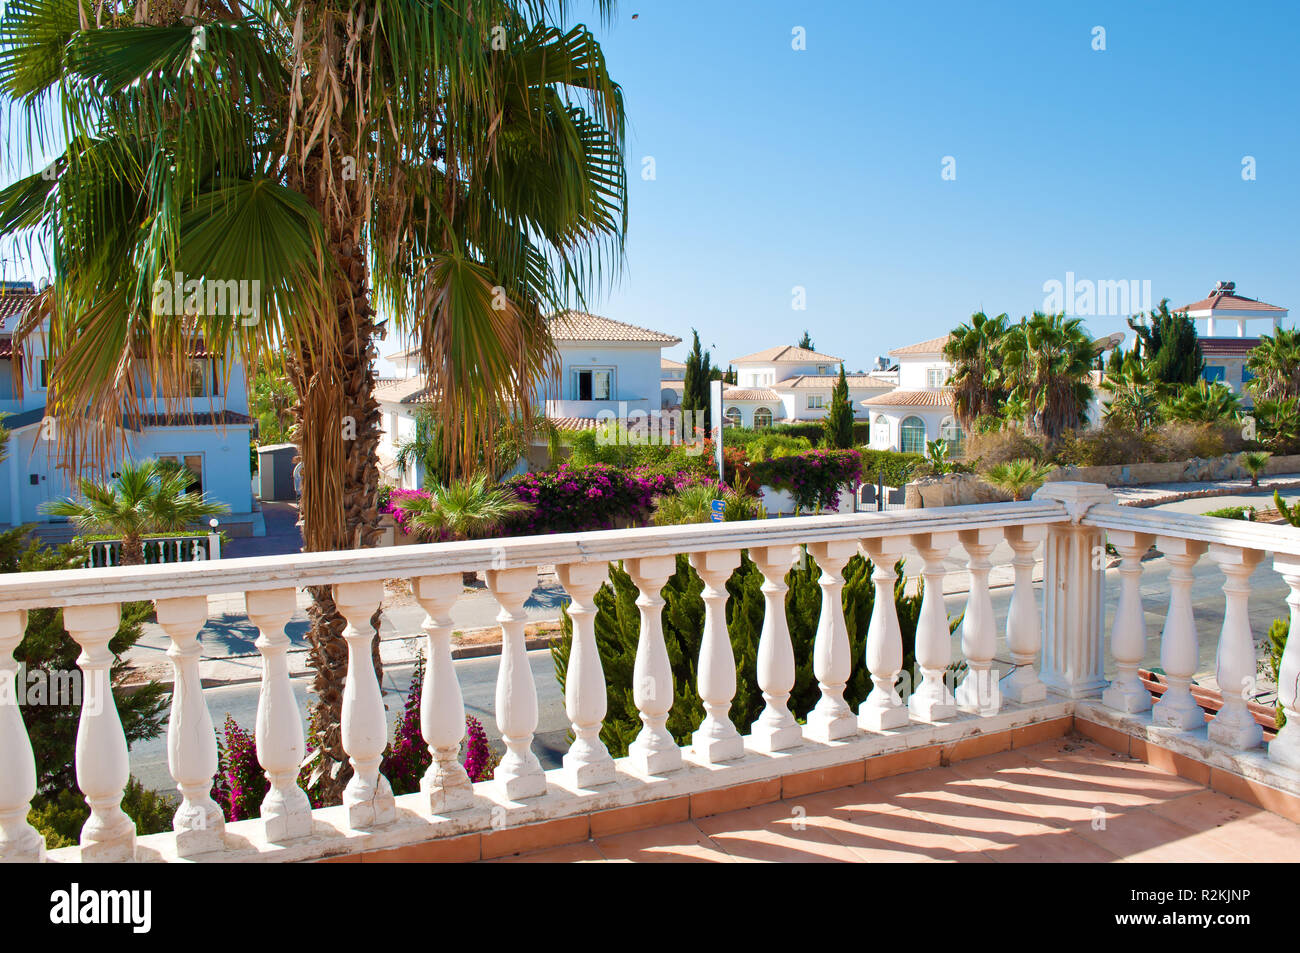 Vue sur une rue avec de nombreuses villas blanches, l'un des palmiers, buissons verts, fleurs roses et feuillage luxuriant derrière un balcon et d'une rampe. Personne n'outsi Banque D'Images